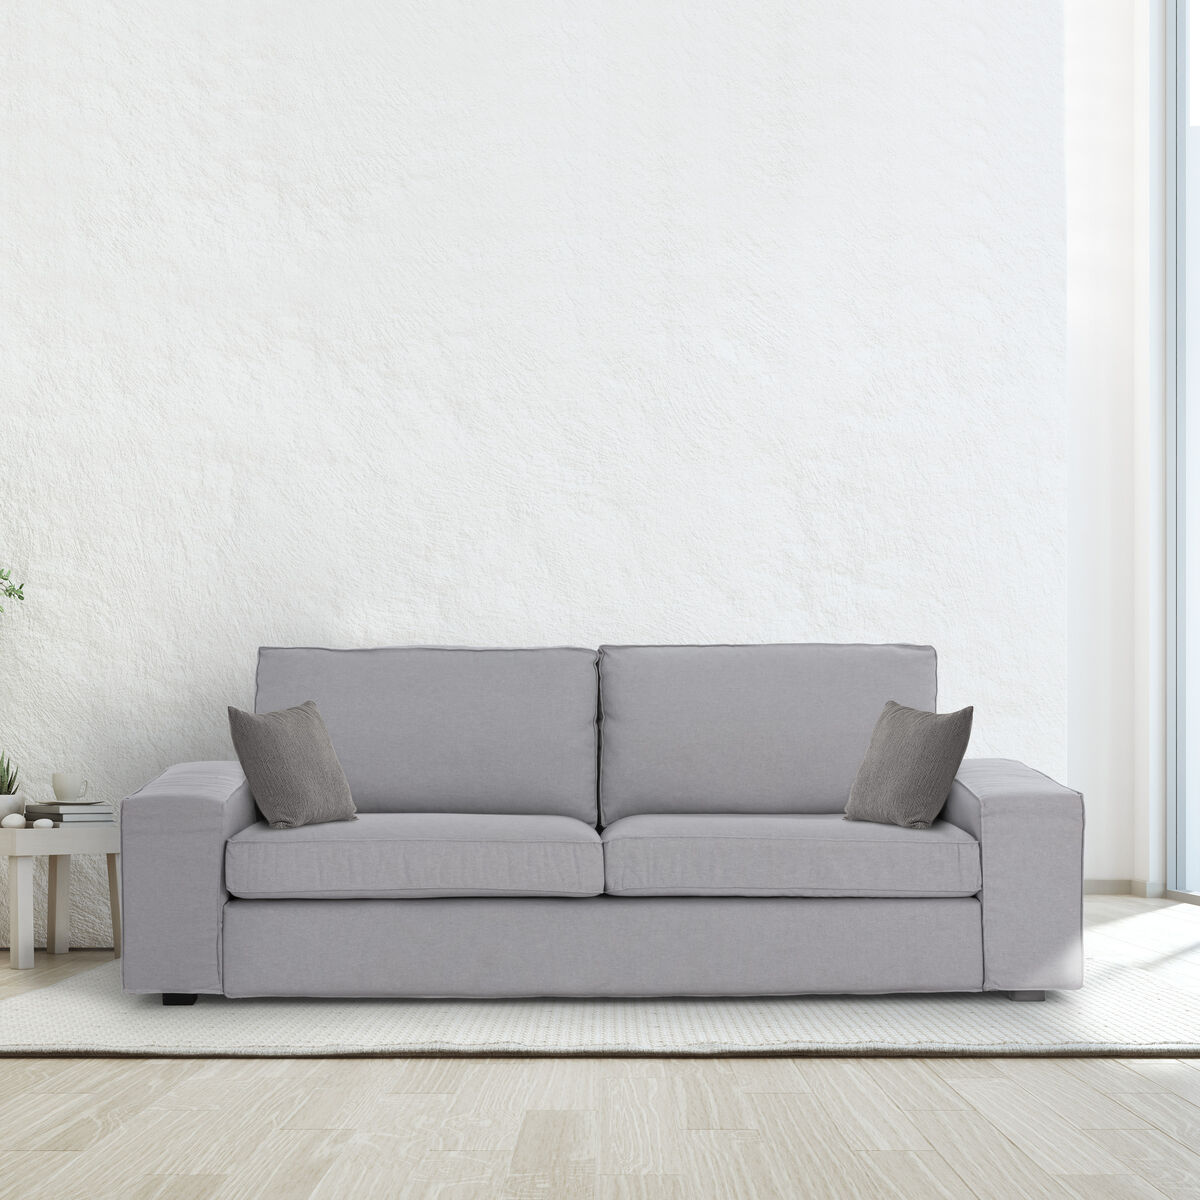 Cushion cover Eysa MID Grey 45 x 45 cm